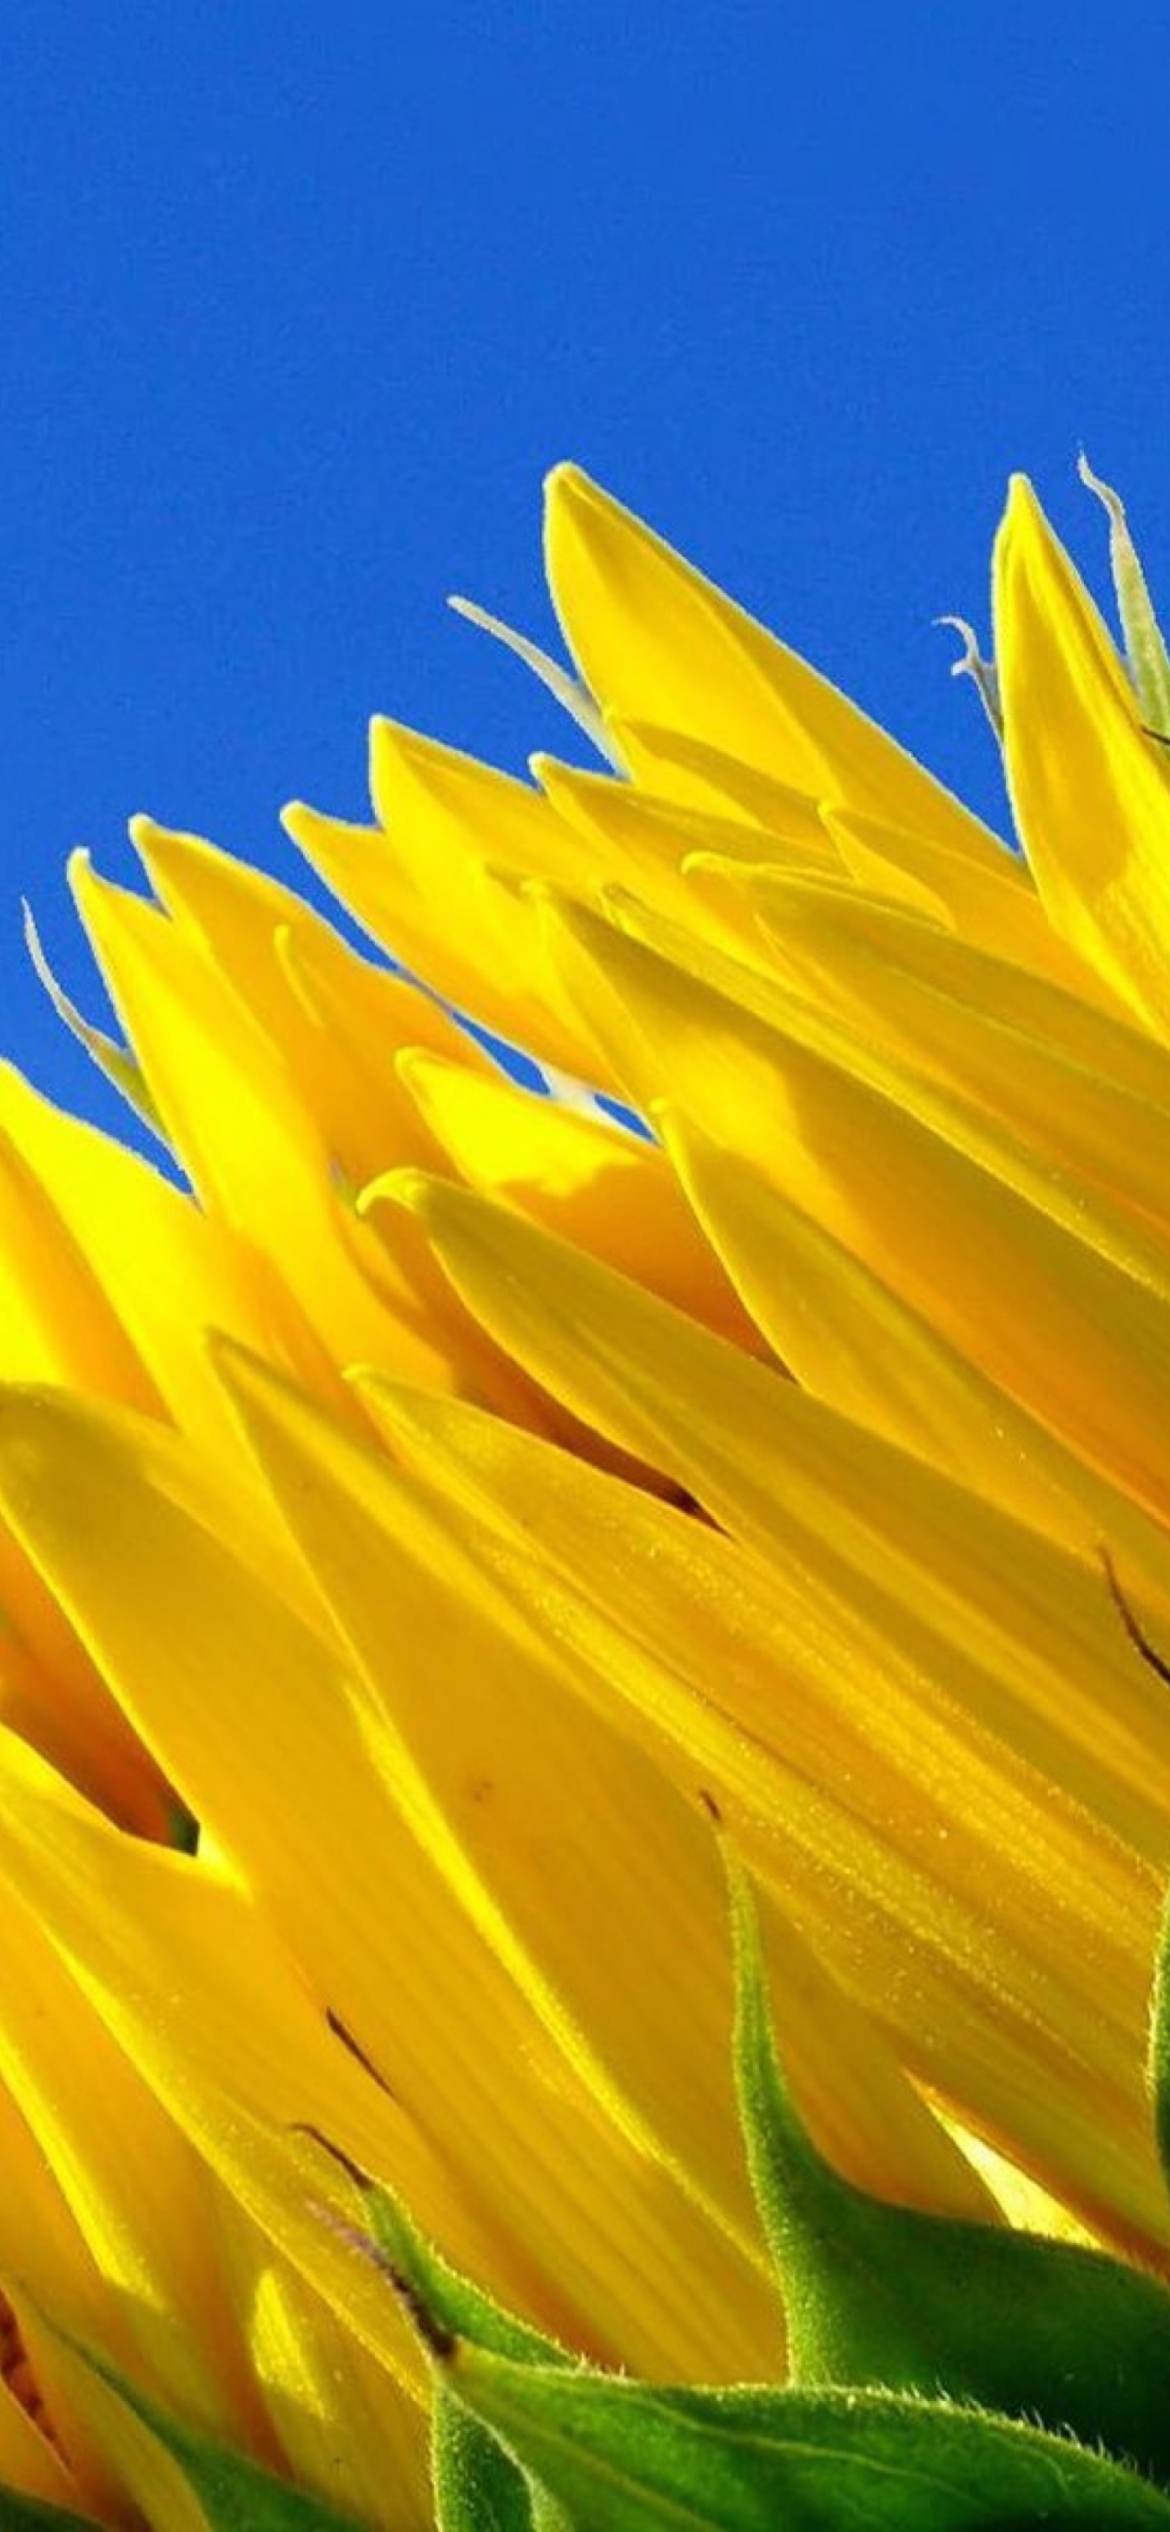 Обои Sunflower And Blue Sky 1170x2532